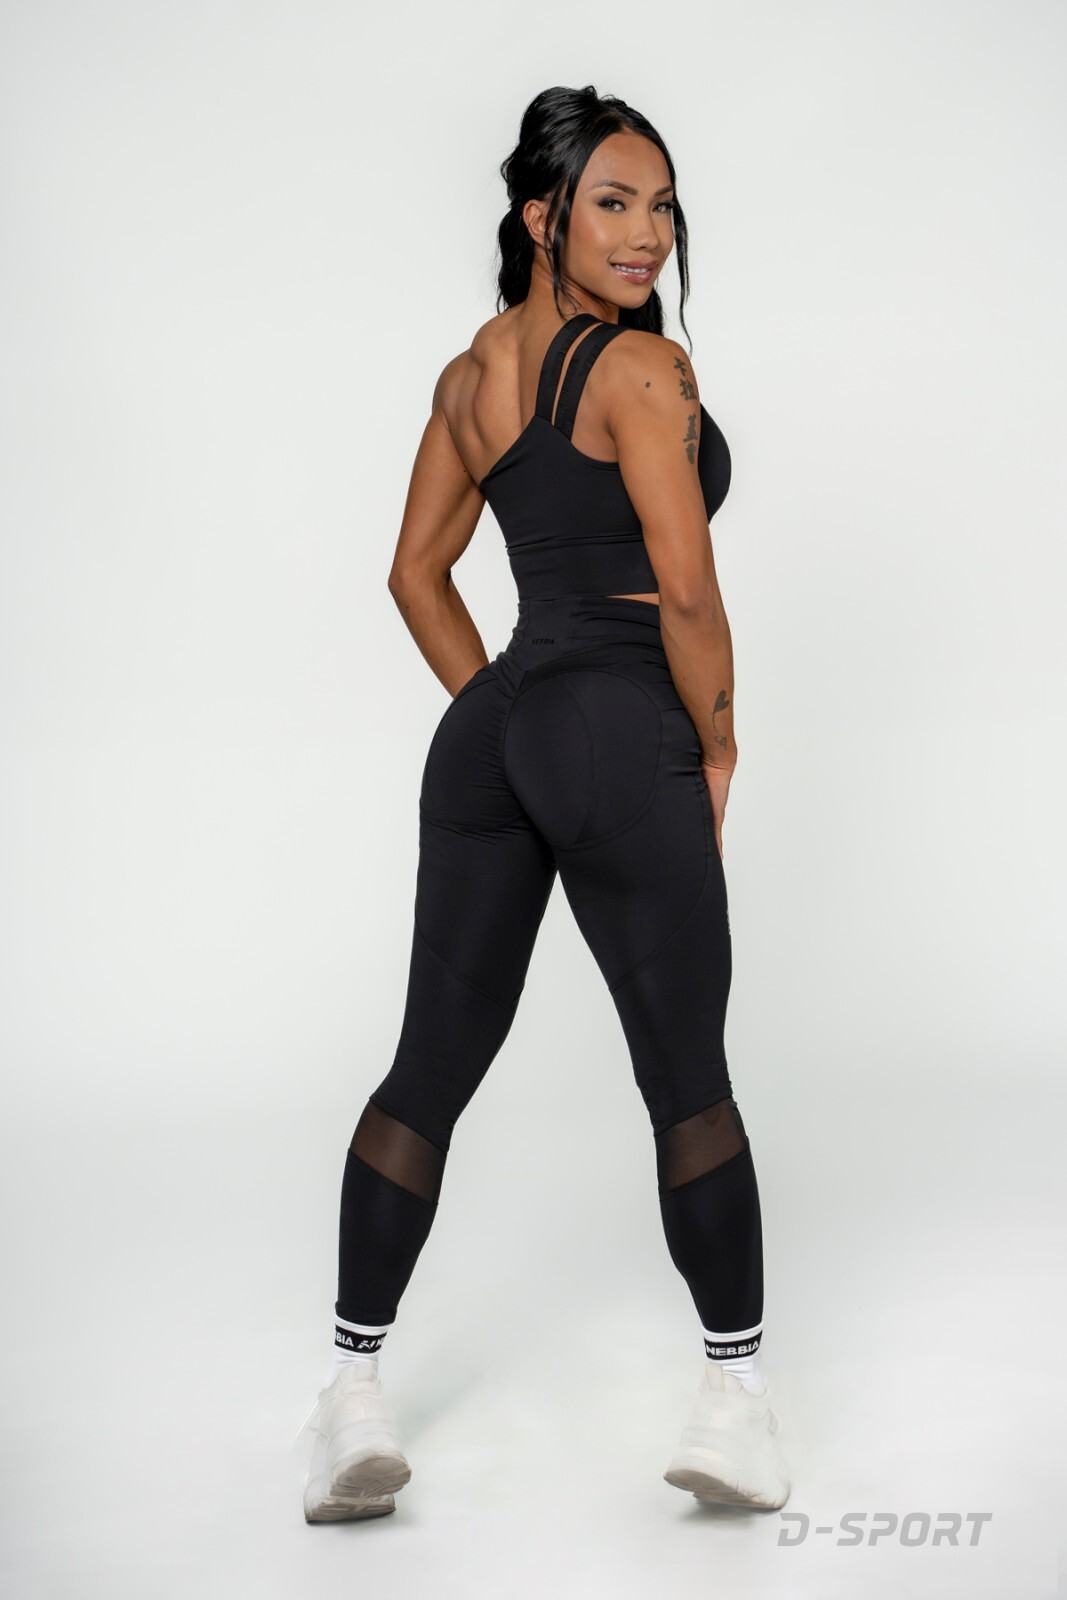 NEBBIA Women's High Waist Leggings INTENSE Mesh BLACK - 838-Black